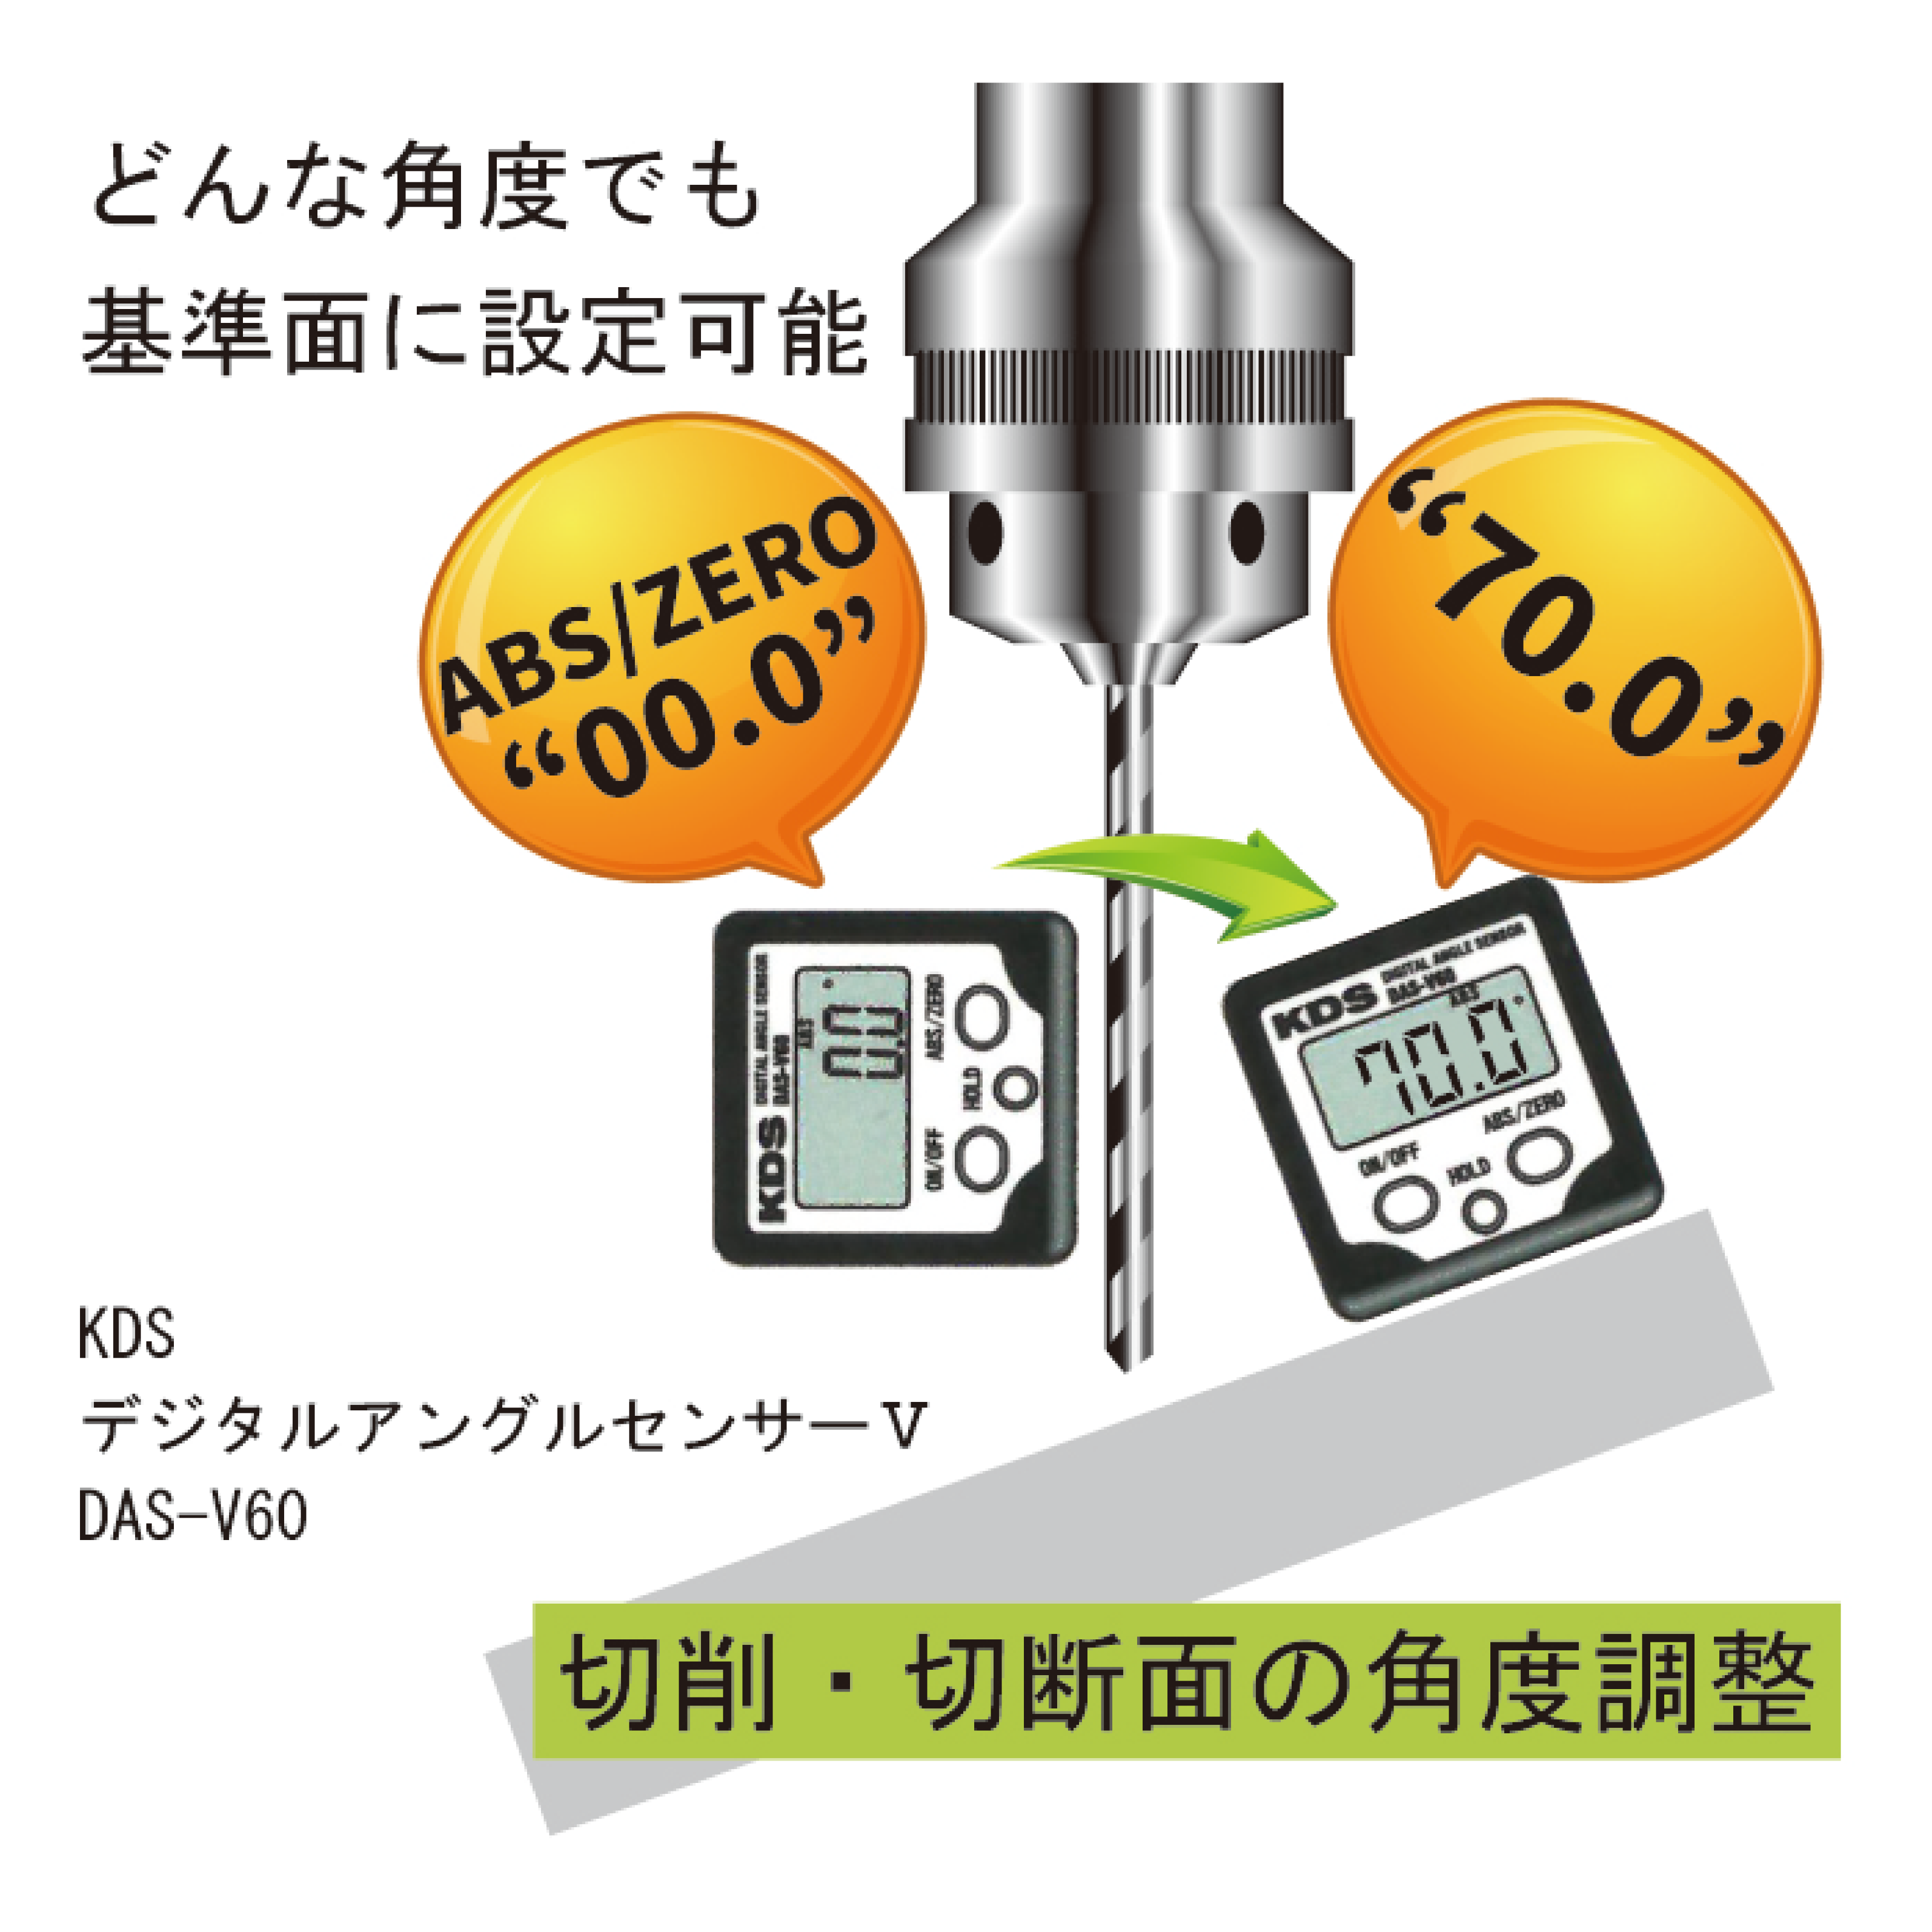 デジタルアングルセンサーV DAS-V60 / ムラテックKDS株式会社